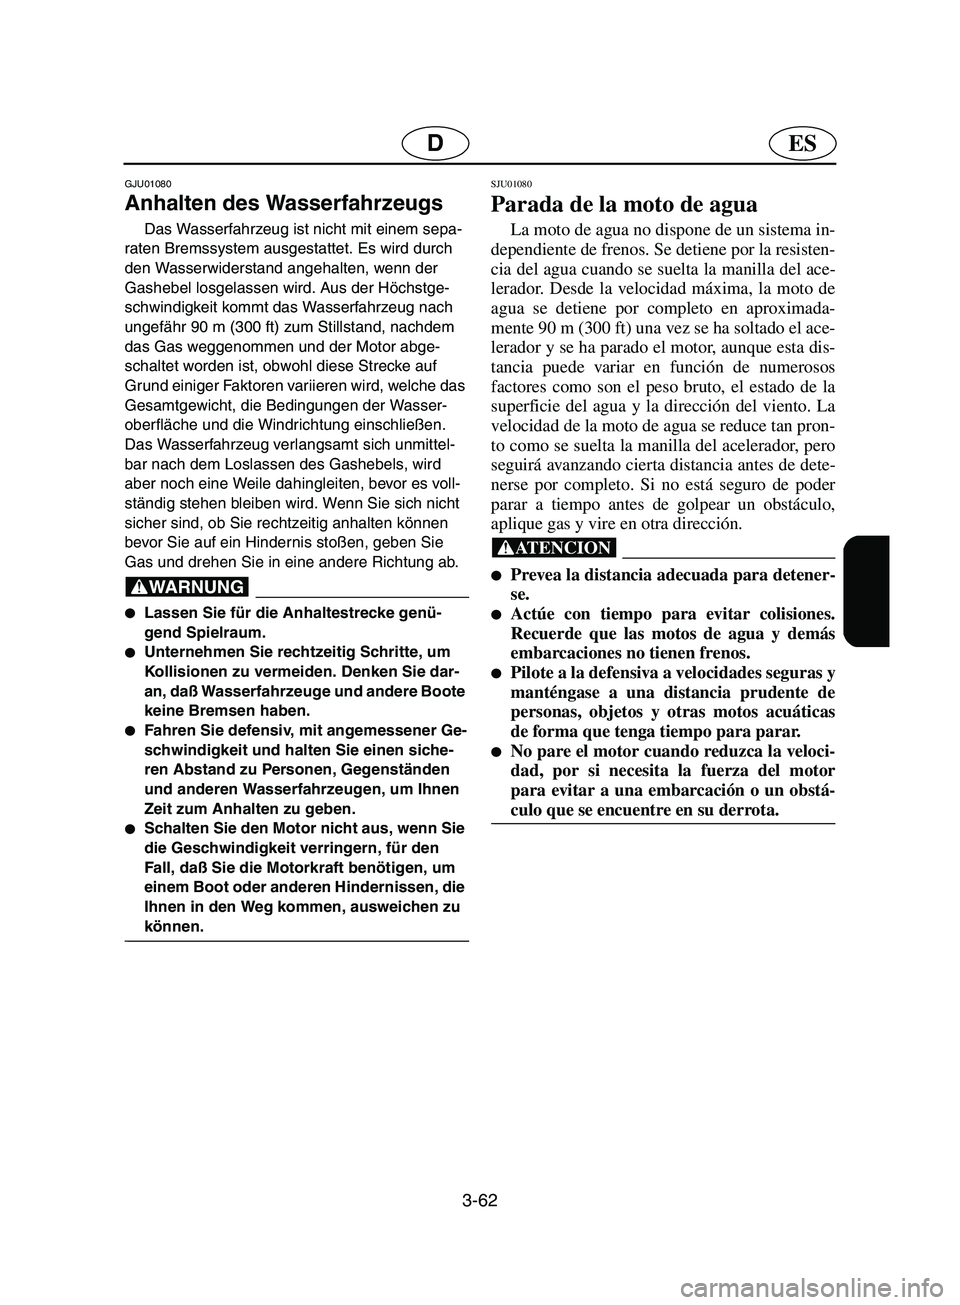 YAMAHA SUPERJET 2002  Manuale de Empleo (in Spanish) 3-62
ESD
GJU01080 
Anhalten des Wasserfahrzeugs  
Das Wasserfahrzeug ist nicht mit einem sepa-
raten Bremssystem ausgestattet. Es wird durch 
den Wasserwiderstand angehalten, wenn der 
Gashebel losgel